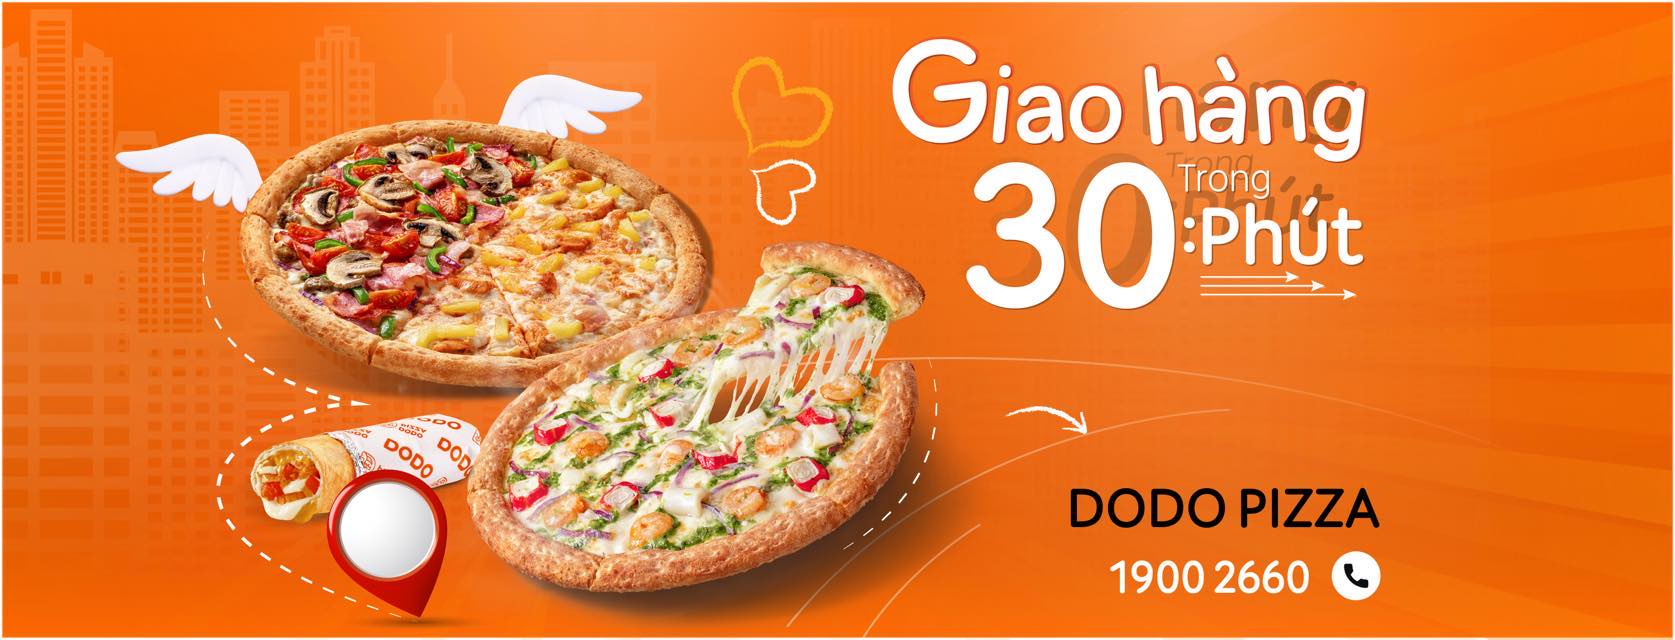 Dodo Pizza Giao Hàng Trung Bình 30 Phút Trong Phạm Vi Giao Hàng Của Nhà Hàng Để Đảm Bảo Thời Gian Và Chất Lượng Sản Phẩm